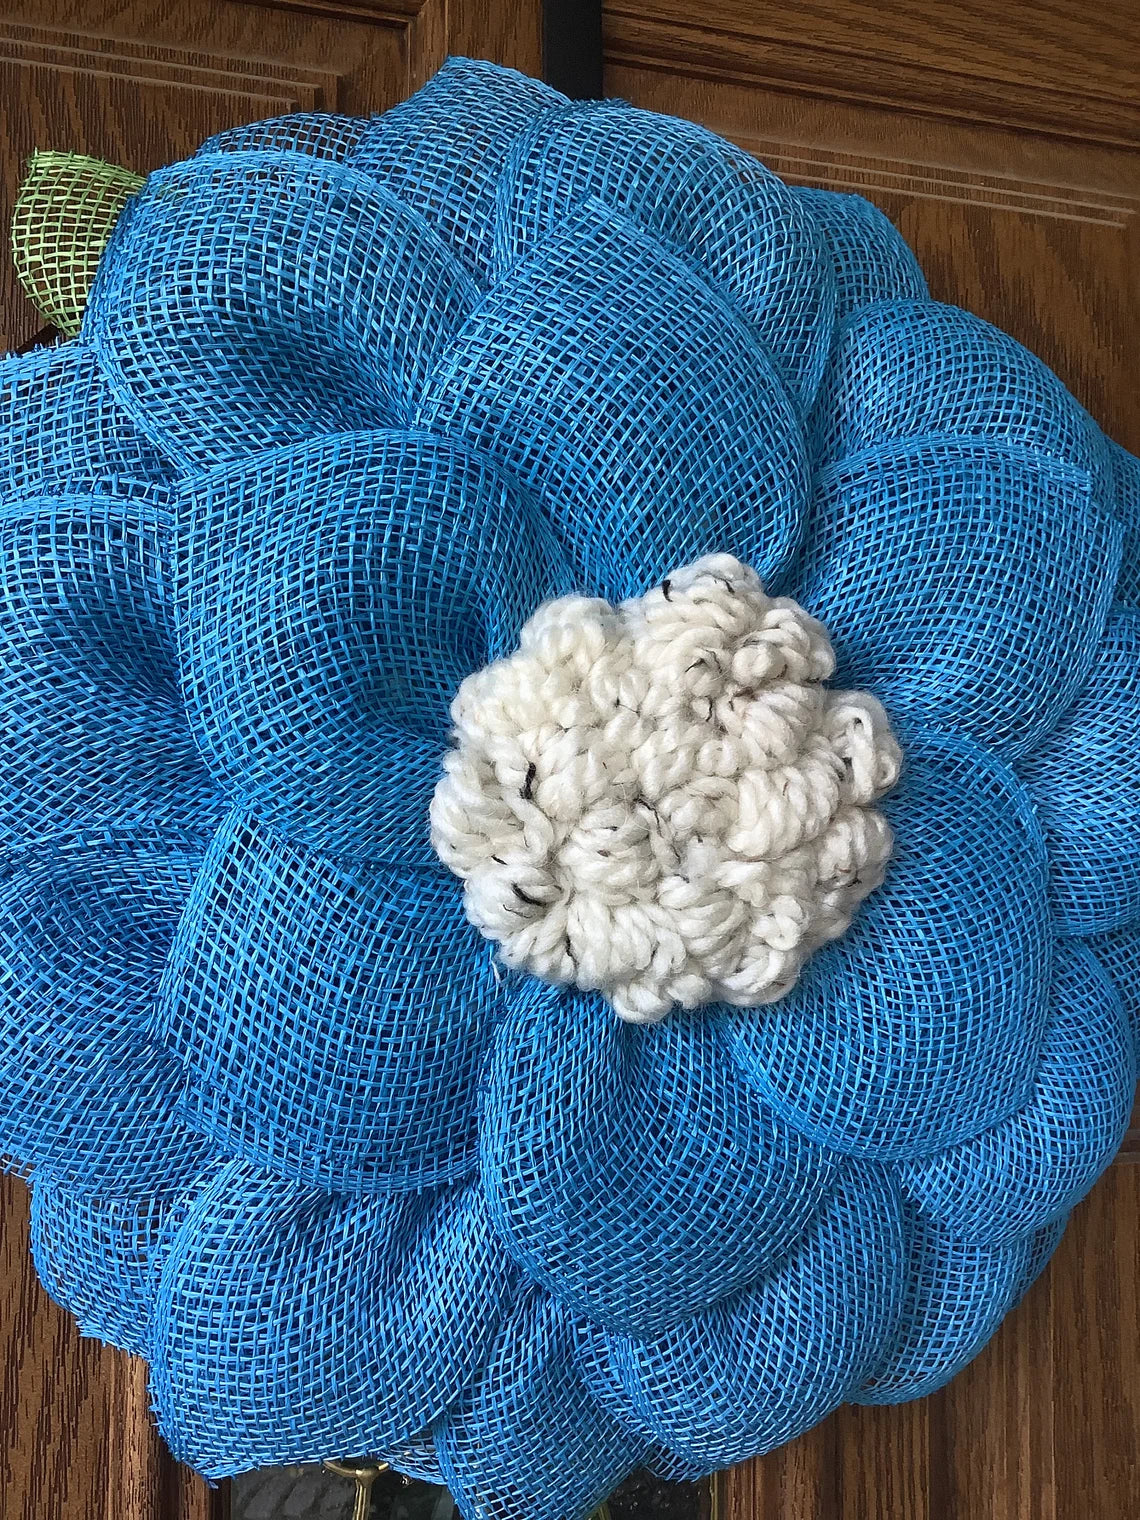 Blue Mesh Flower Wreath for Front Door